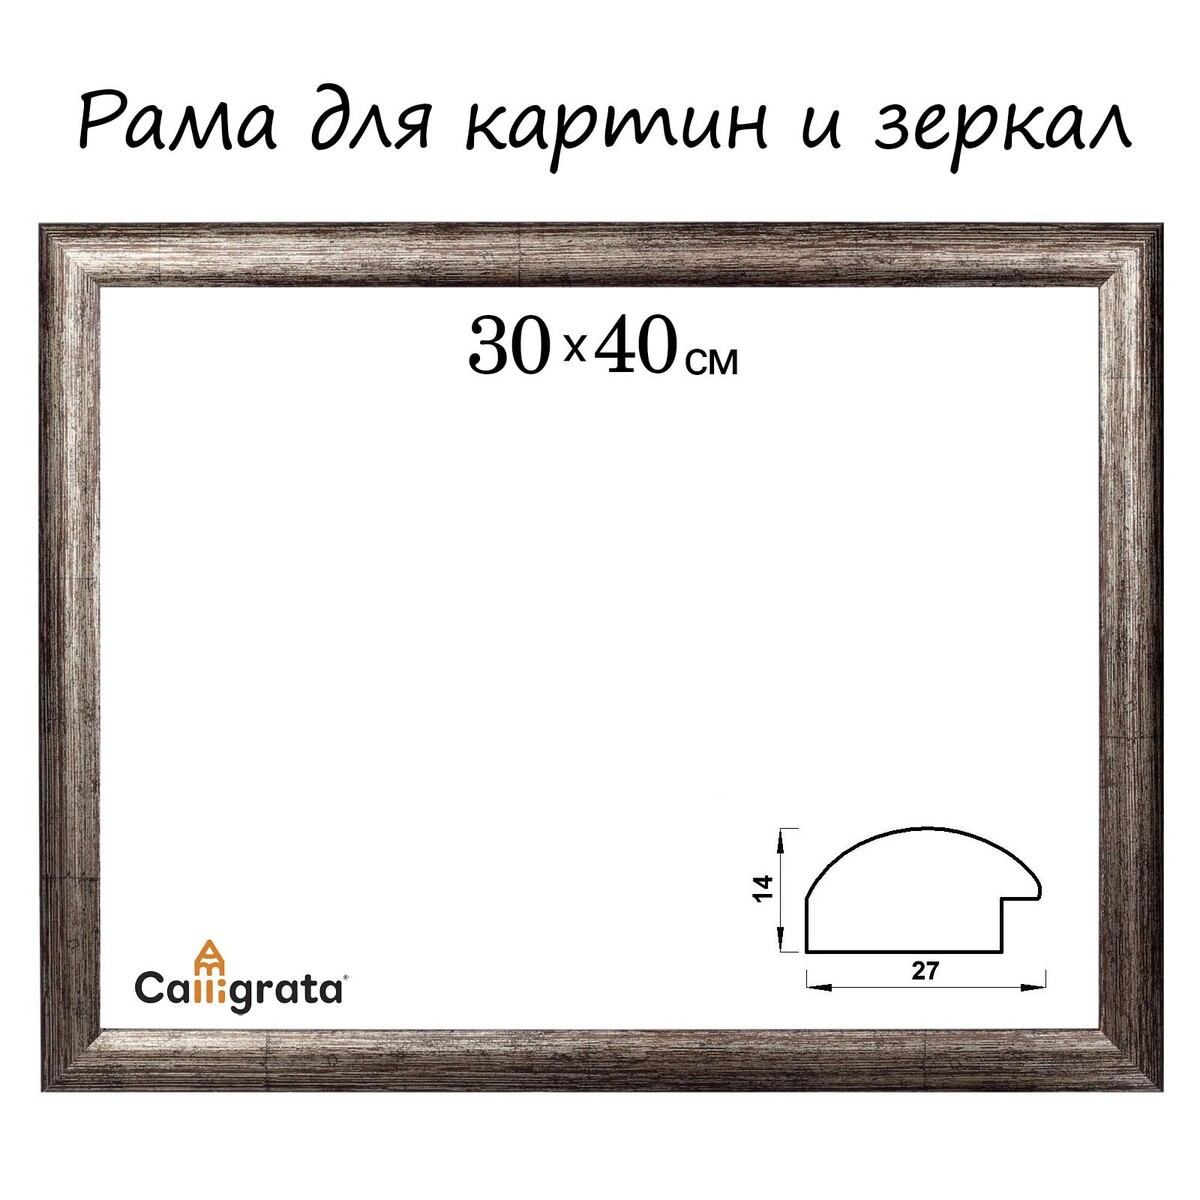 Рама для картин (зеркал) 30 х 40 х 2,7 см, пластиковая, calligrata 6472, цвет коричневая-серая рама для картин зеркал 30 х 40 х 3 0 см пластиковая calligrata 6792 бронзовая